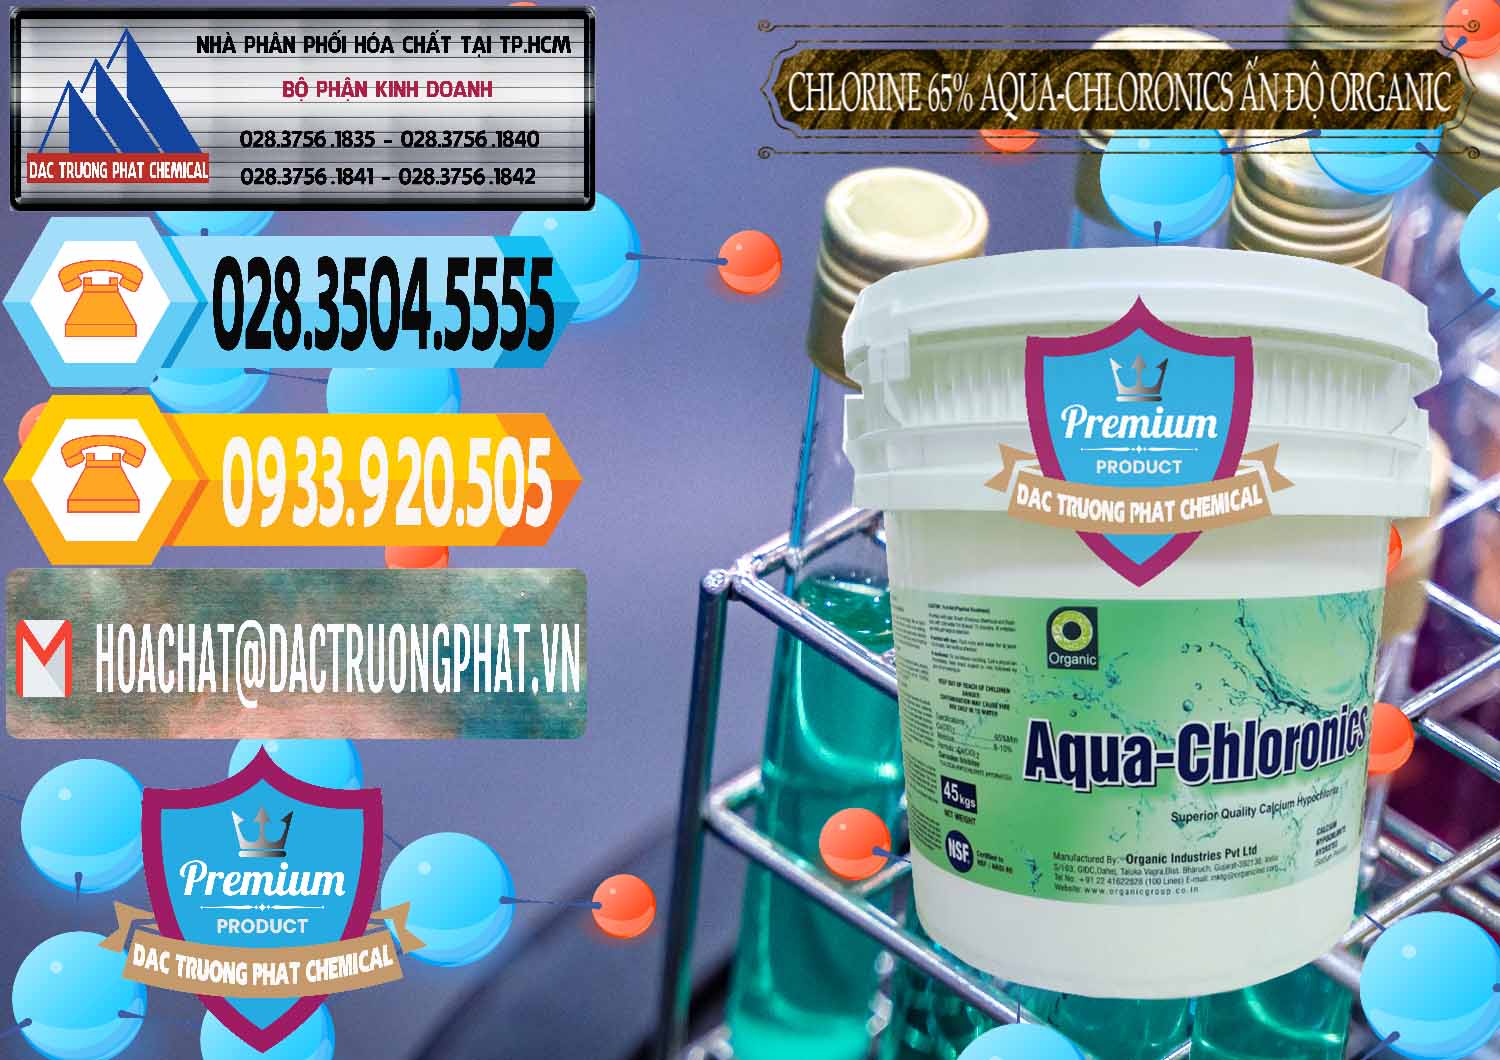 Công ty nhập khẩu & bán Chlorine – Clorin 65% Aqua-Chloronics Ấn Độ Organic India - 0210 - Nhà cung cấp _ nhập khẩu hóa chất tại TP.HCM - hoachattayrua.net